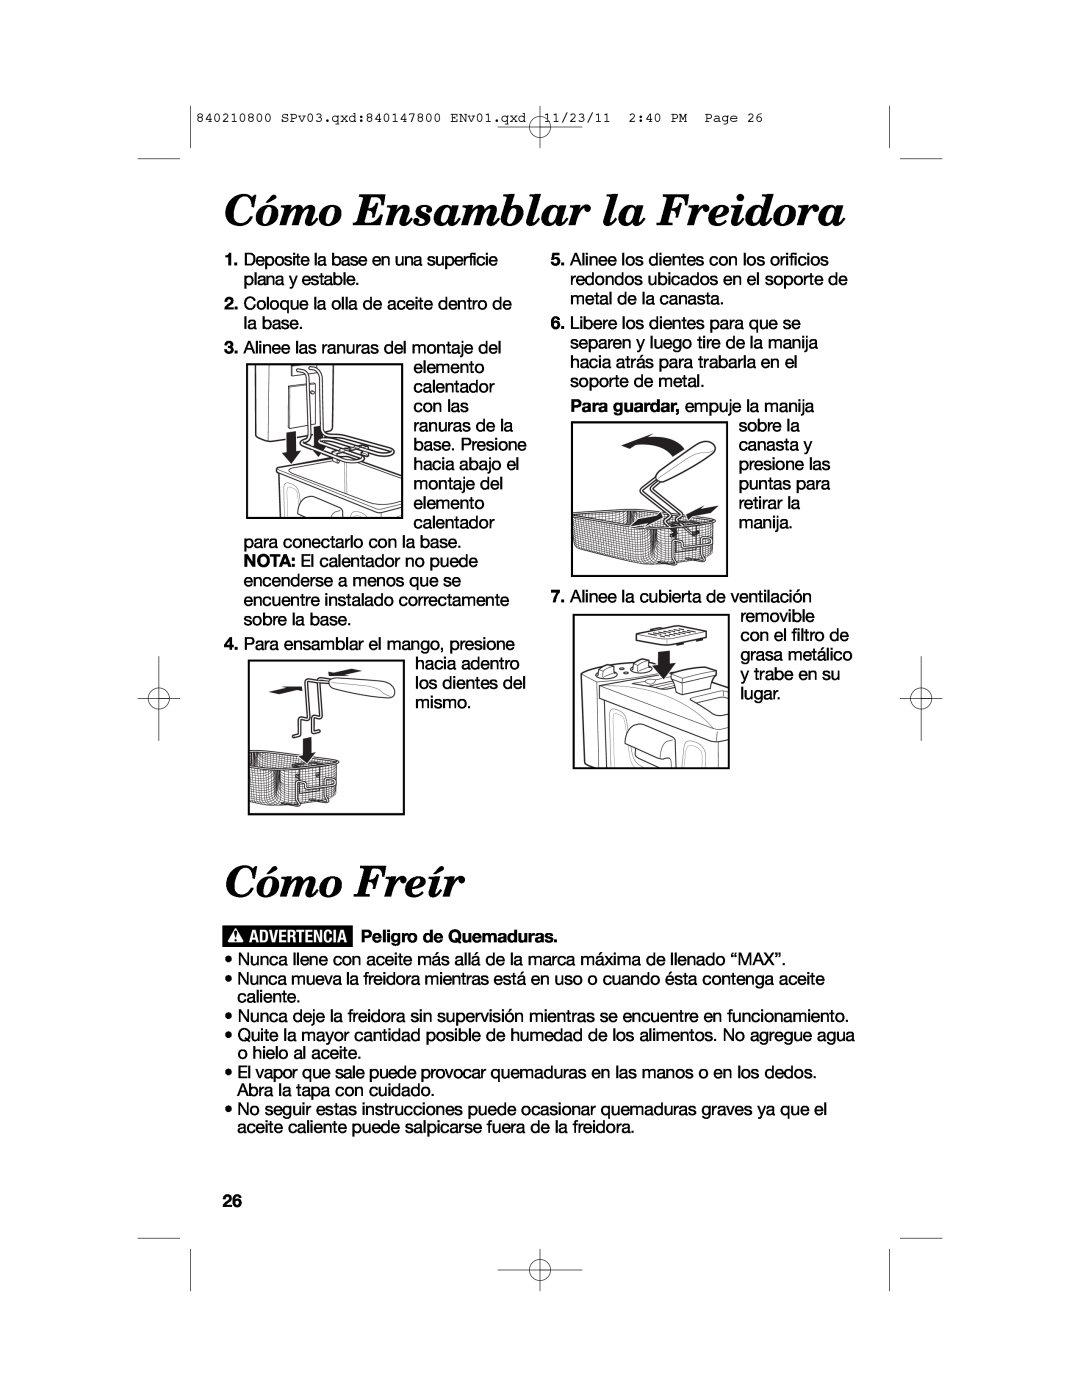 Hamilton Beach 35200 manual Cómo Ensamblar la Freidora, Cómo Freír, w ADVERTENCIA Peligro de Quemaduras 